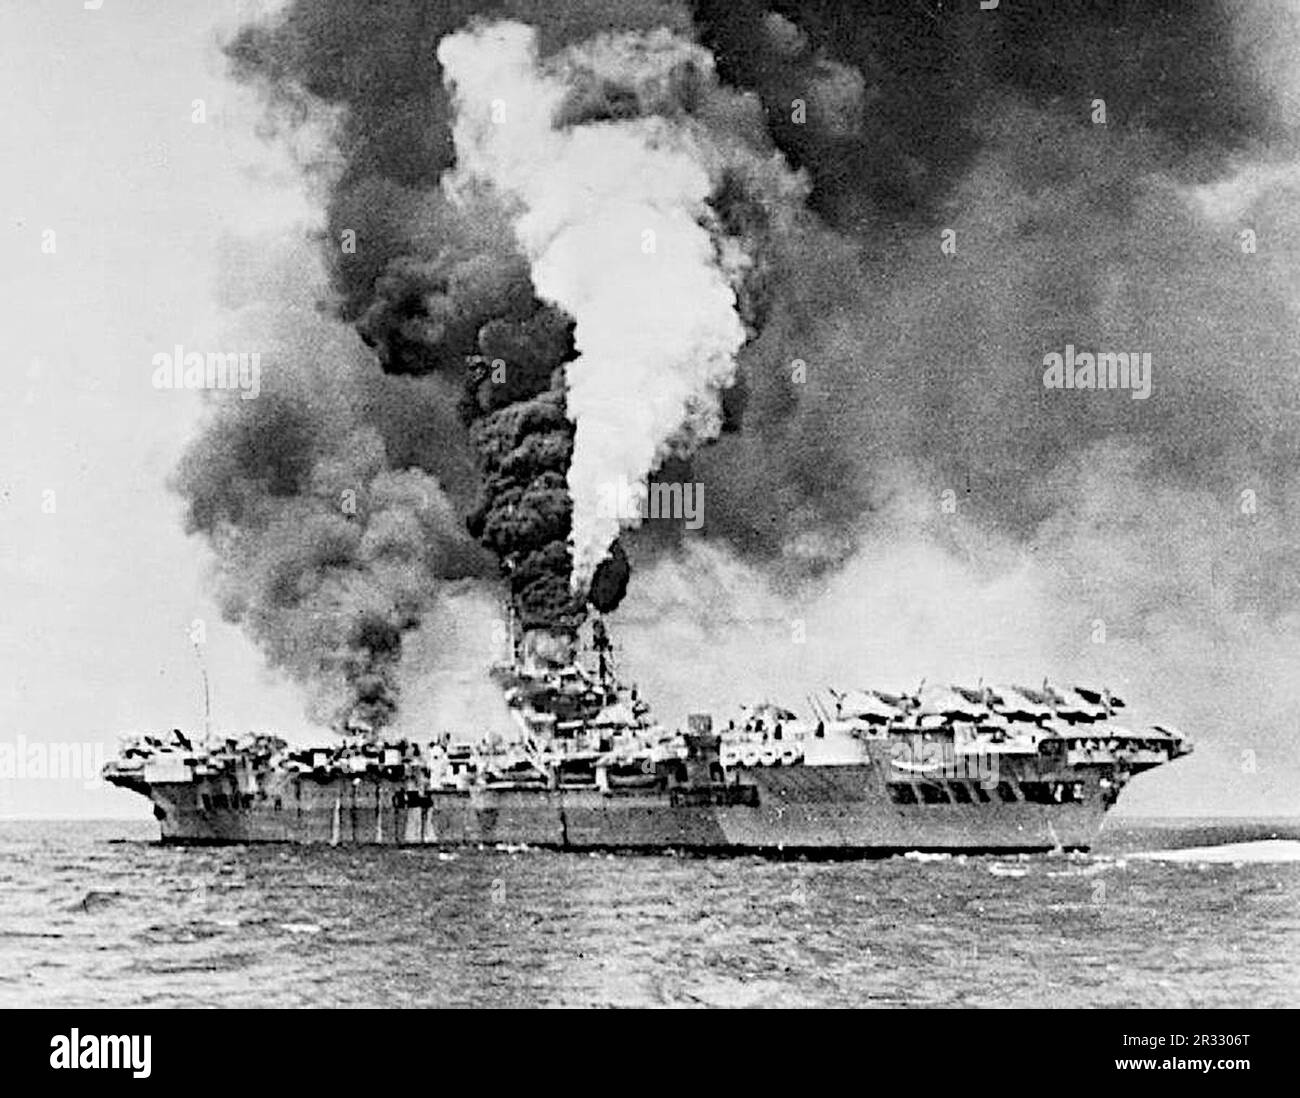 Le porte-avions HMS formidable (R67) en feu après avoir été frappé par un kamikaze au large de Sakishima Gunto. Formidable a été frappé à 1130 heures, le kamikaze faisant une bosselure massive d'environ 3 m de long, 0,6 m de large et de profondeur dans le pont de vol blindé. Une grande trappe en acier s'est envolée à travers le pont du hangar et la chaufferie centrale, où elle a rompu une ligne de vapeur, et est venue se reposer dans un réservoir de carburant, ce qui a déclenché un incendie majeur dans le parc de l'avion. Huit membres d'équipage ont été tués et quarante-sept ont été blessés. Un Corsair de Vought et dix Avengers de Grumman ont été détruits Banque D'Images